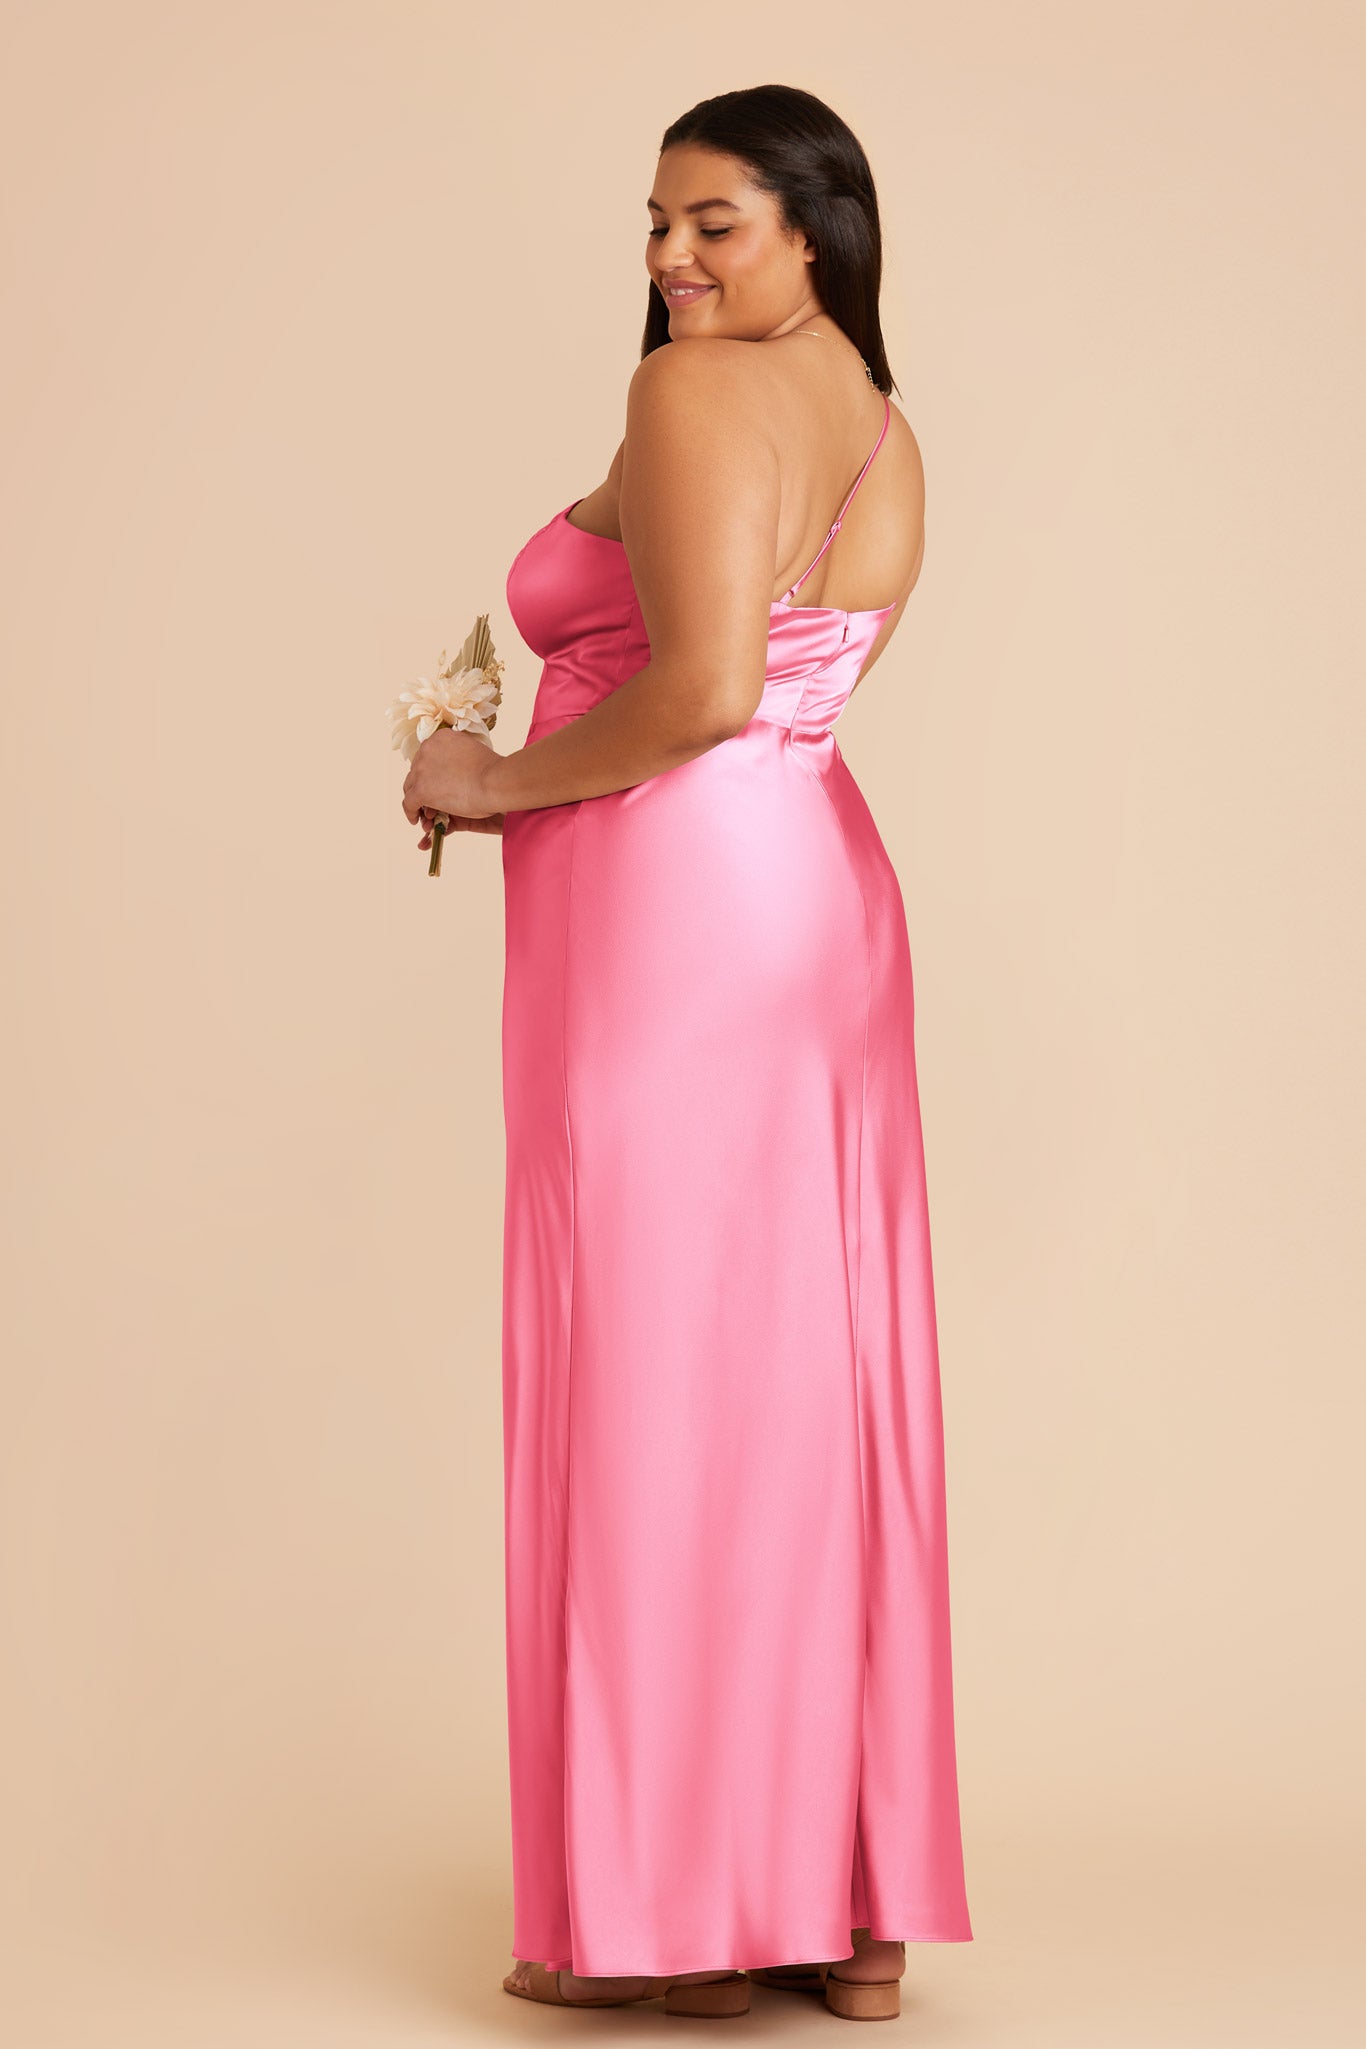 Bon Bon Pink Kensie Matte Satin Dress by Birdy Grey